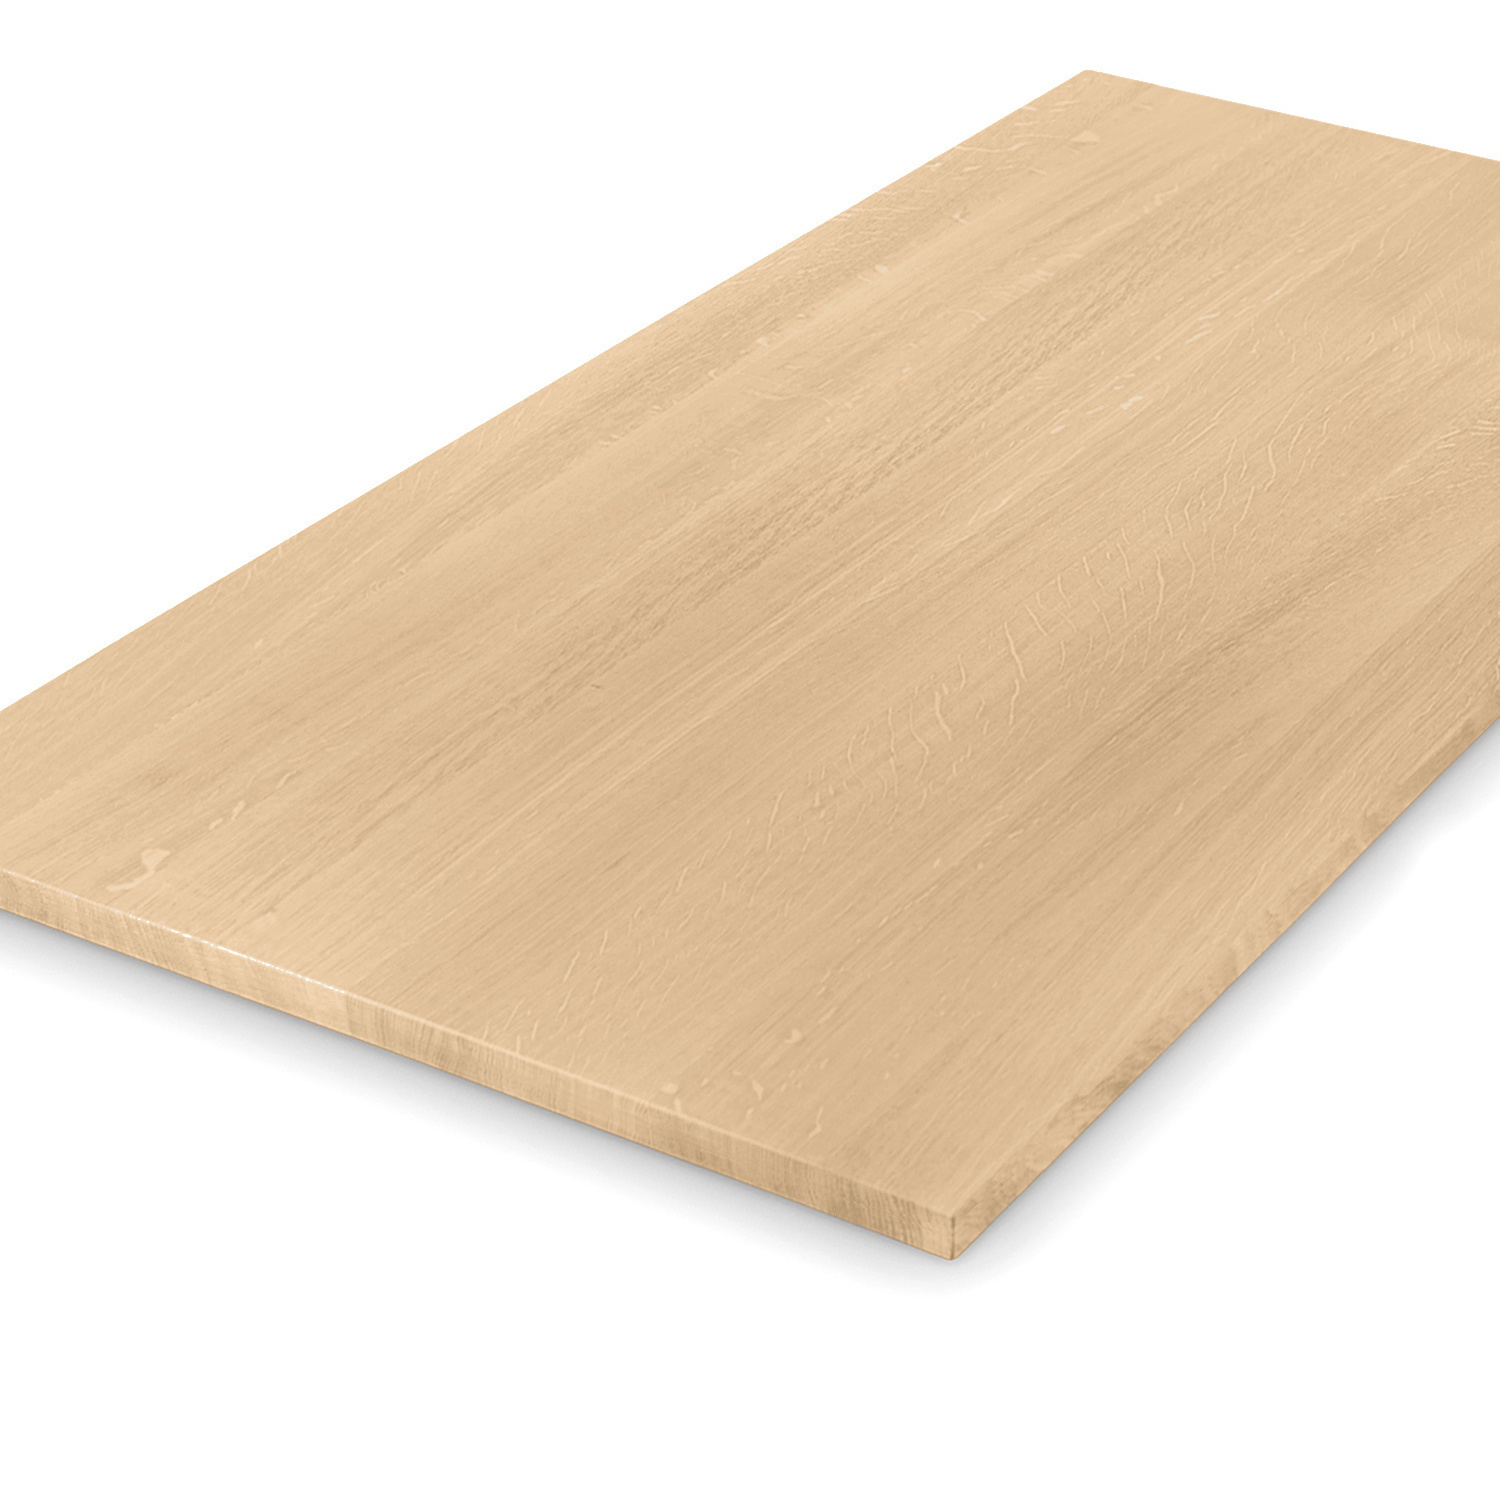  Tischplatte Eiche nach Maß - 2,3 cm dick - Eichenholz A-Qualität - Eiche Tischplatte massiv - verleimt & künstlich getrocknet (HF 8-12%) - 50-120x50-350 cm